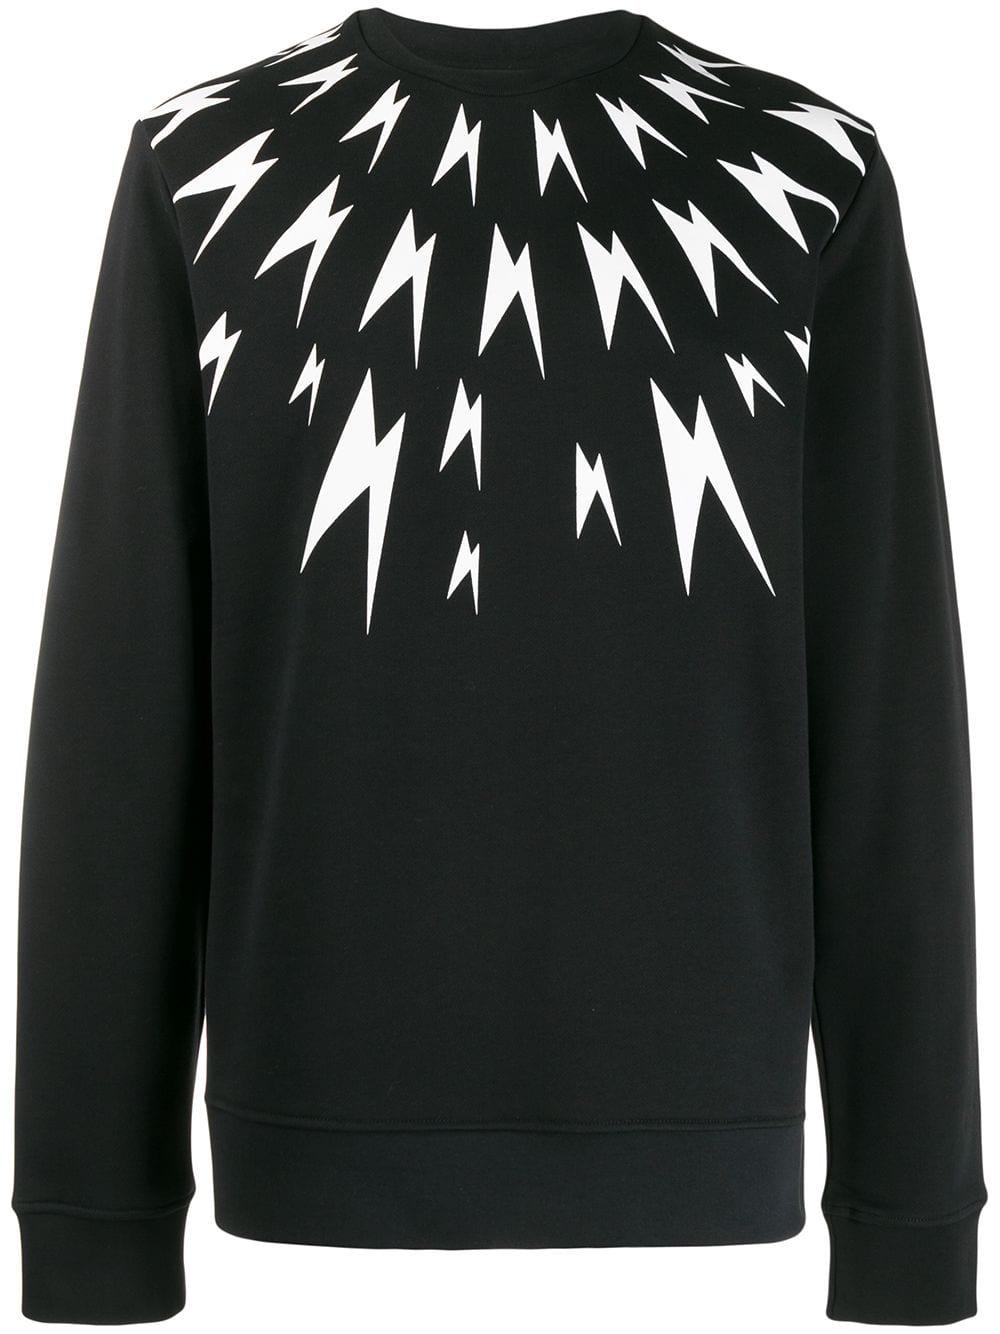 Neil Barrett Thunderbolt Wool Sweater in Black for Men - Save 38% - Lyst